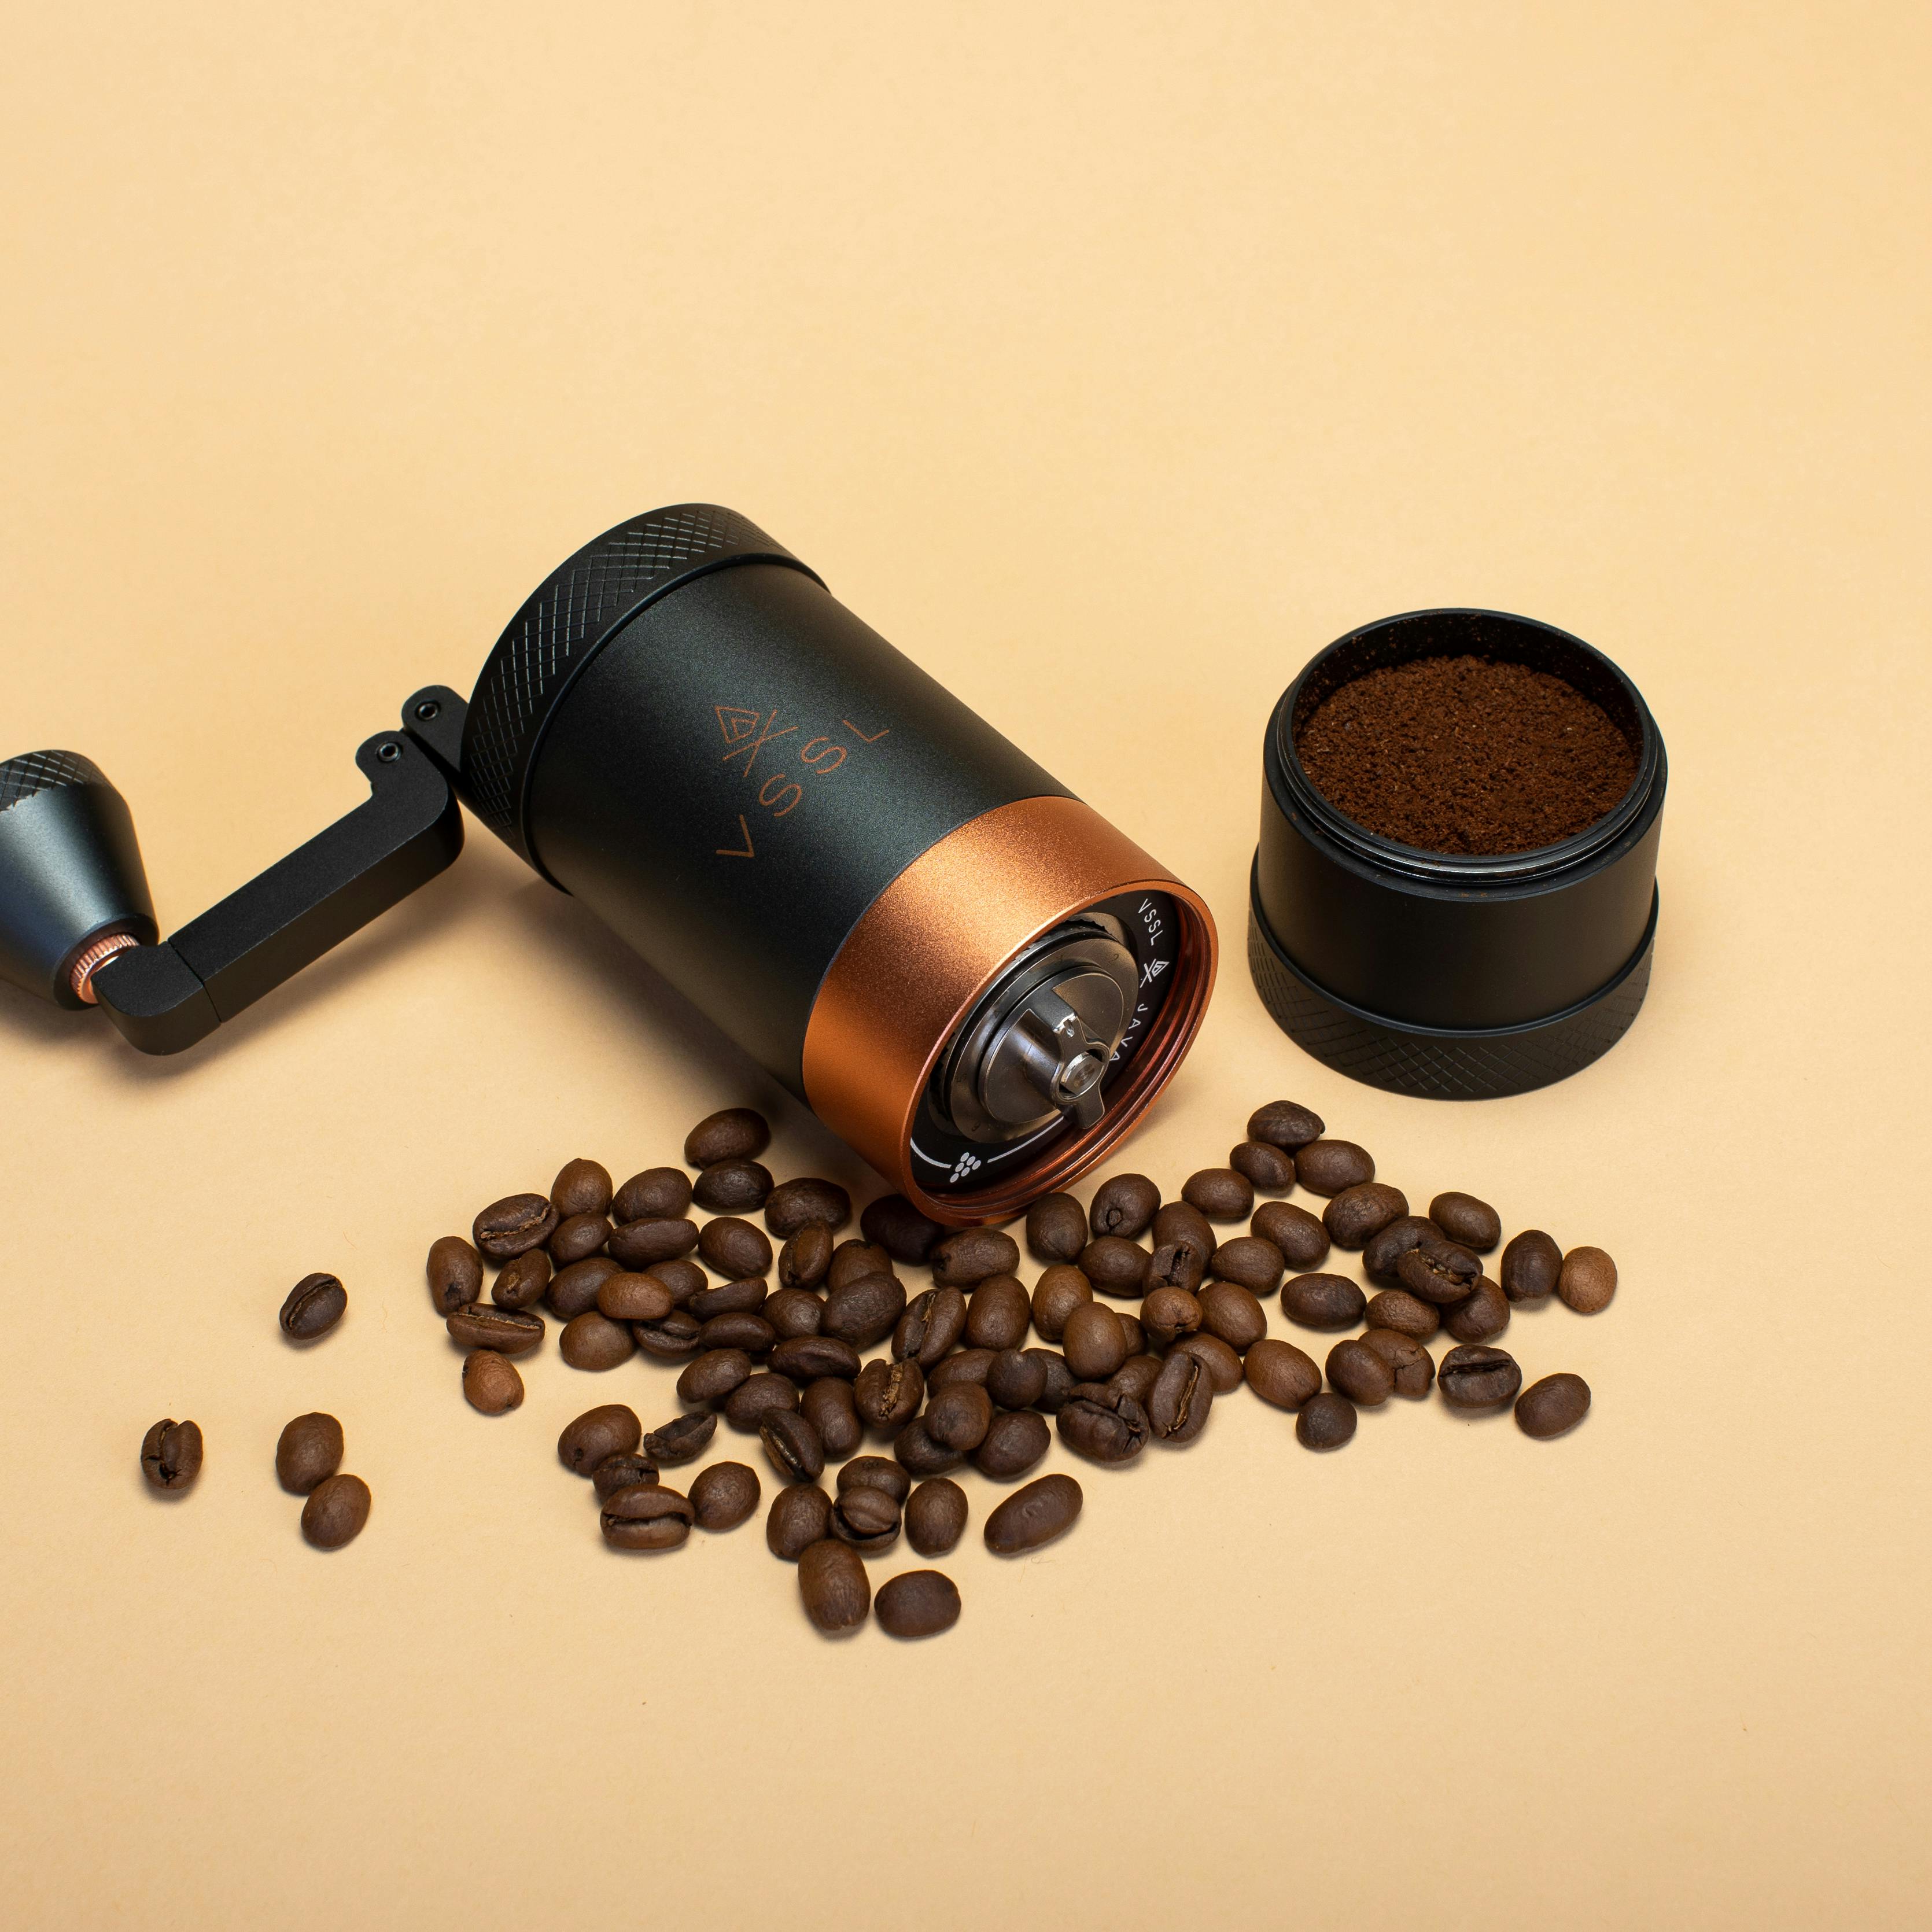 VSSL Java Handheld Coffee Grinder